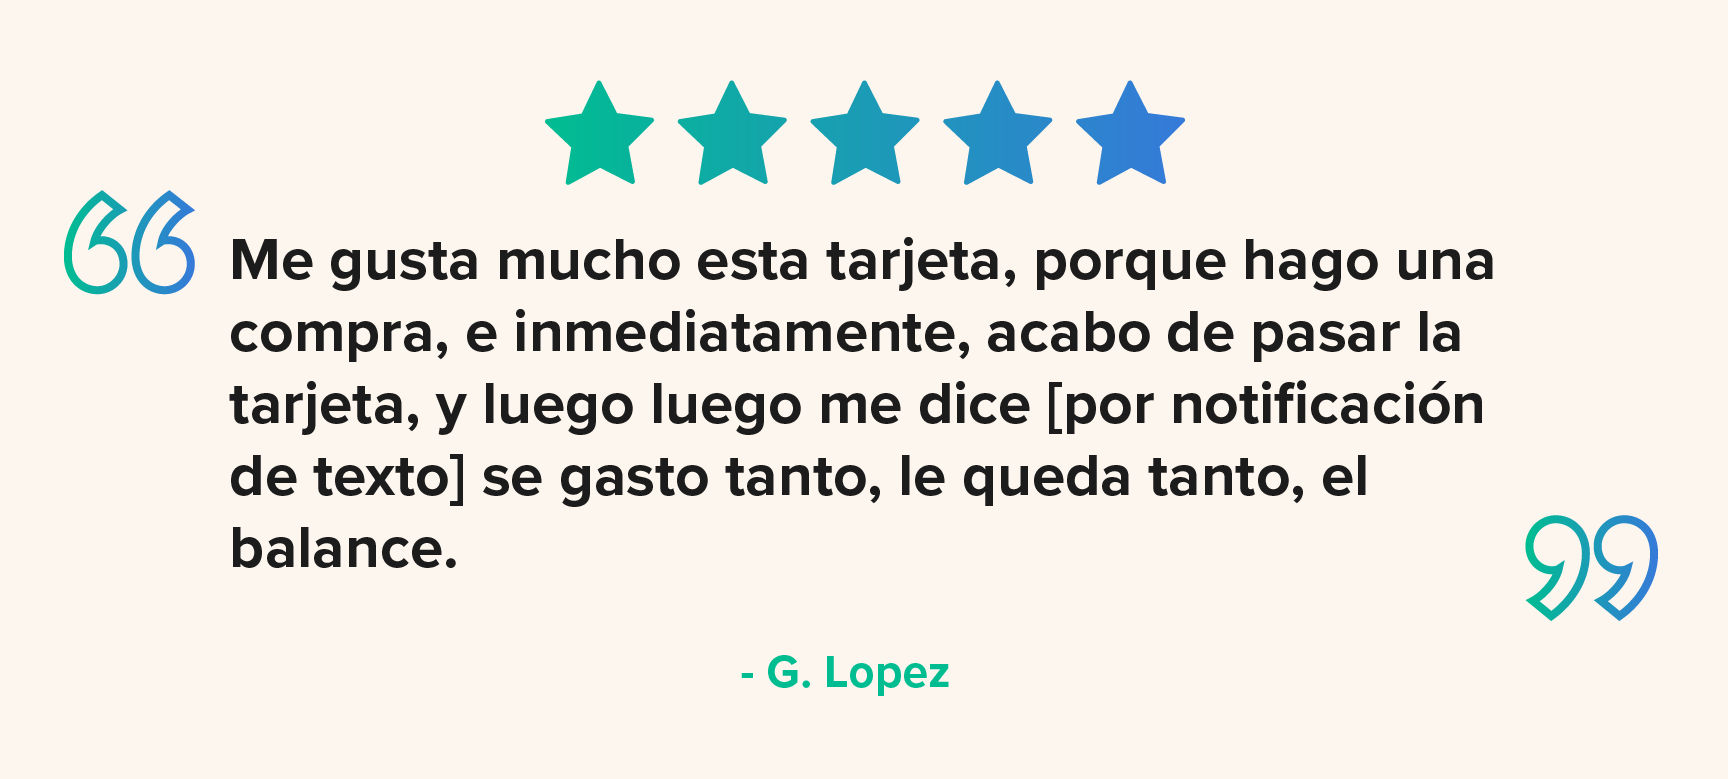 Testimonio-G-Lopez-1.png